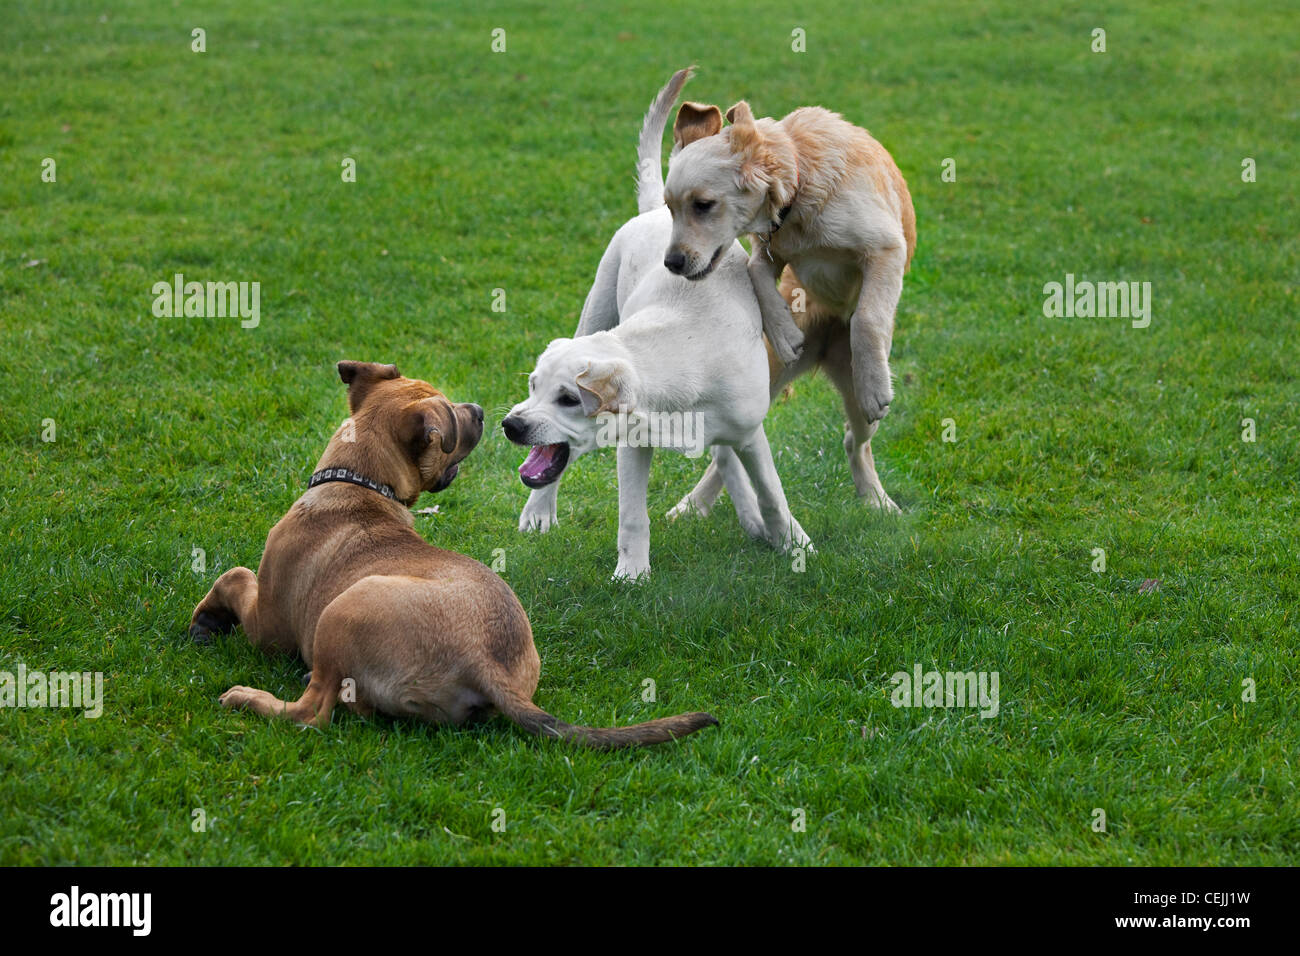 Les jeunes chiens (Canis lupus familiaris) s'amuser en jouant, pourchasser et de mordre l'un l'autre dans le jardin Banque D'Images